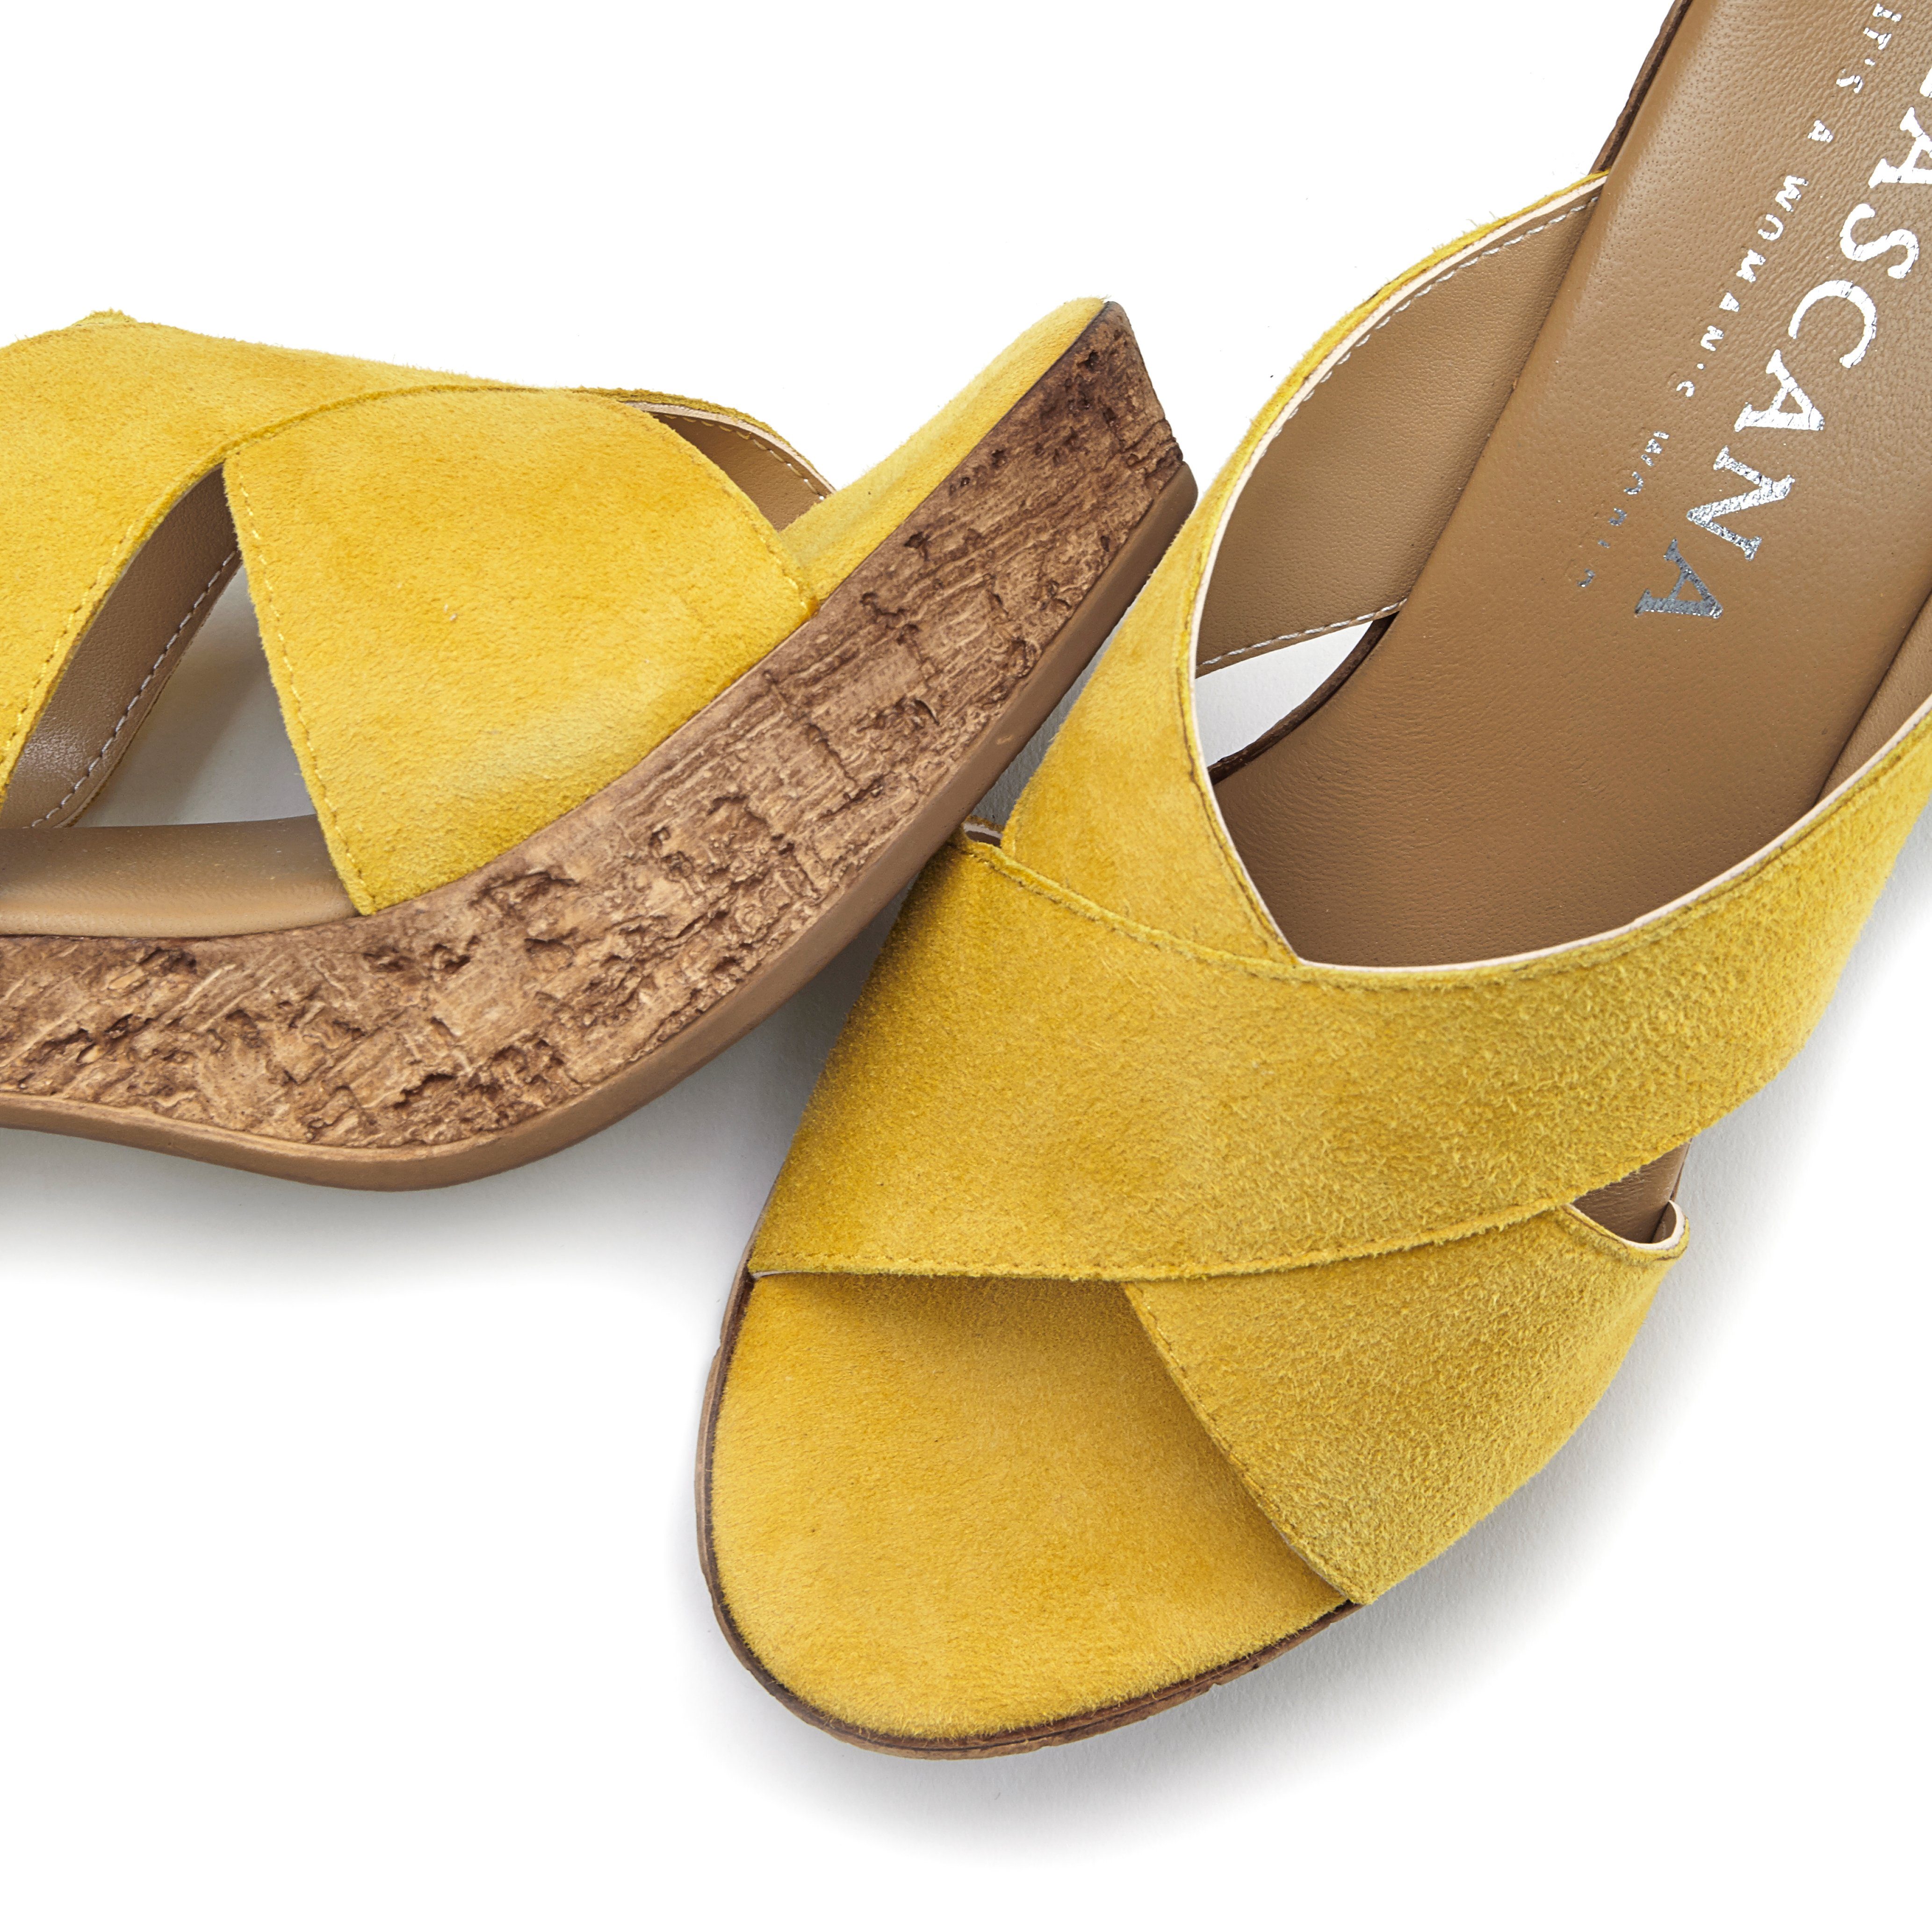 Pantolette Schuh offener Mule, LASCANA Blockabsatz Leder gelb Sandale, mit aus